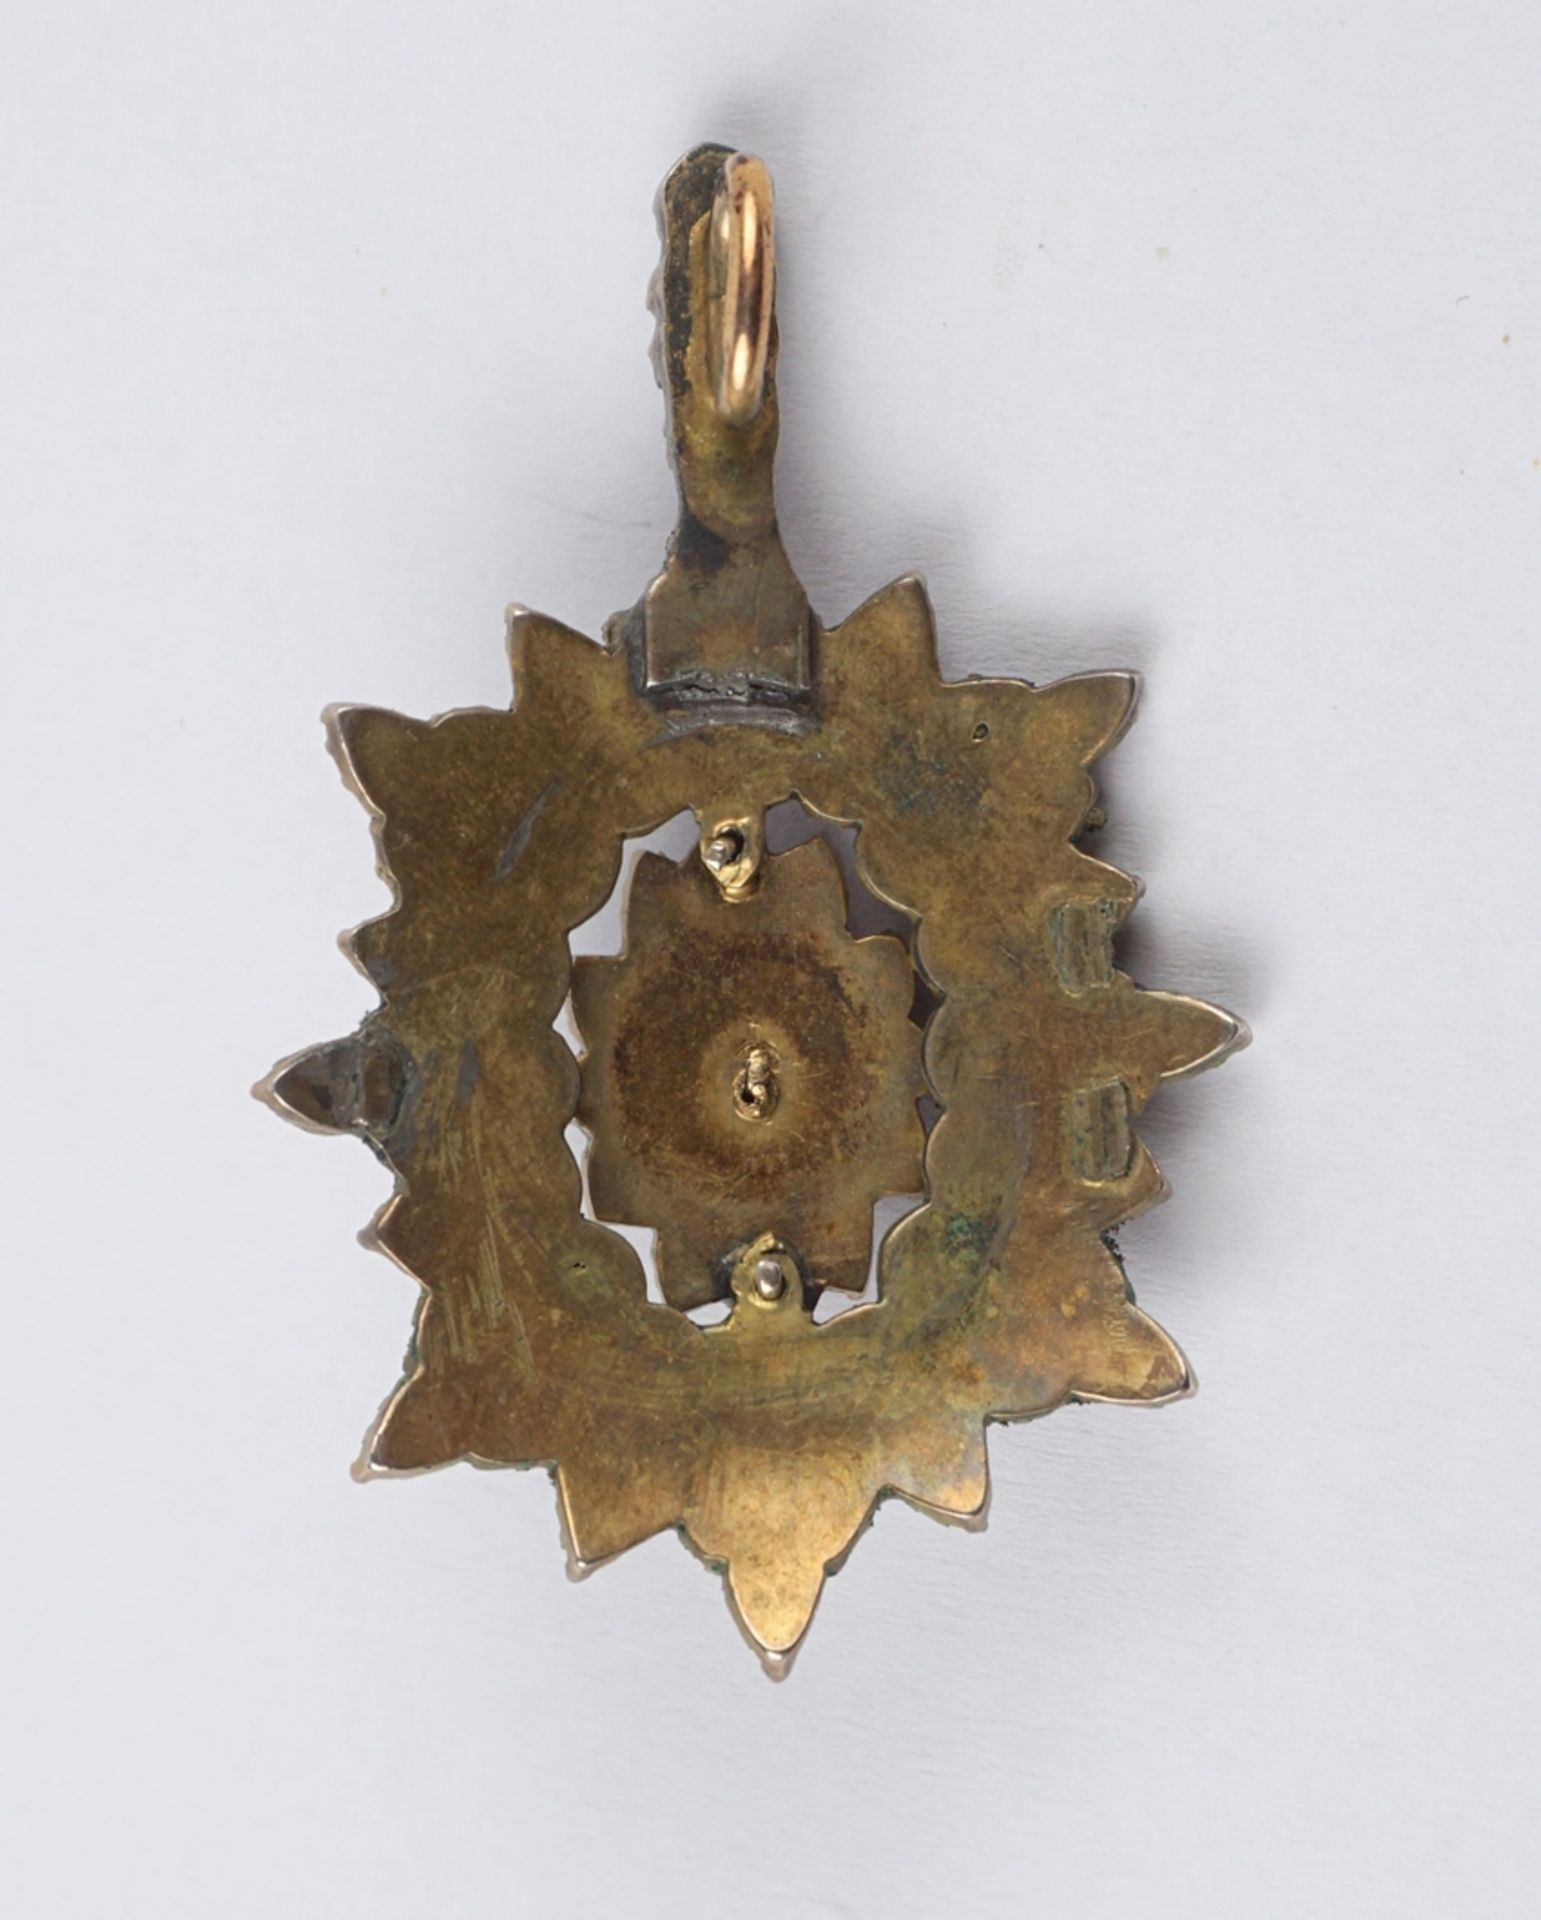 Garnet pendant, Bohemia around 1890 - Image 3 of 3